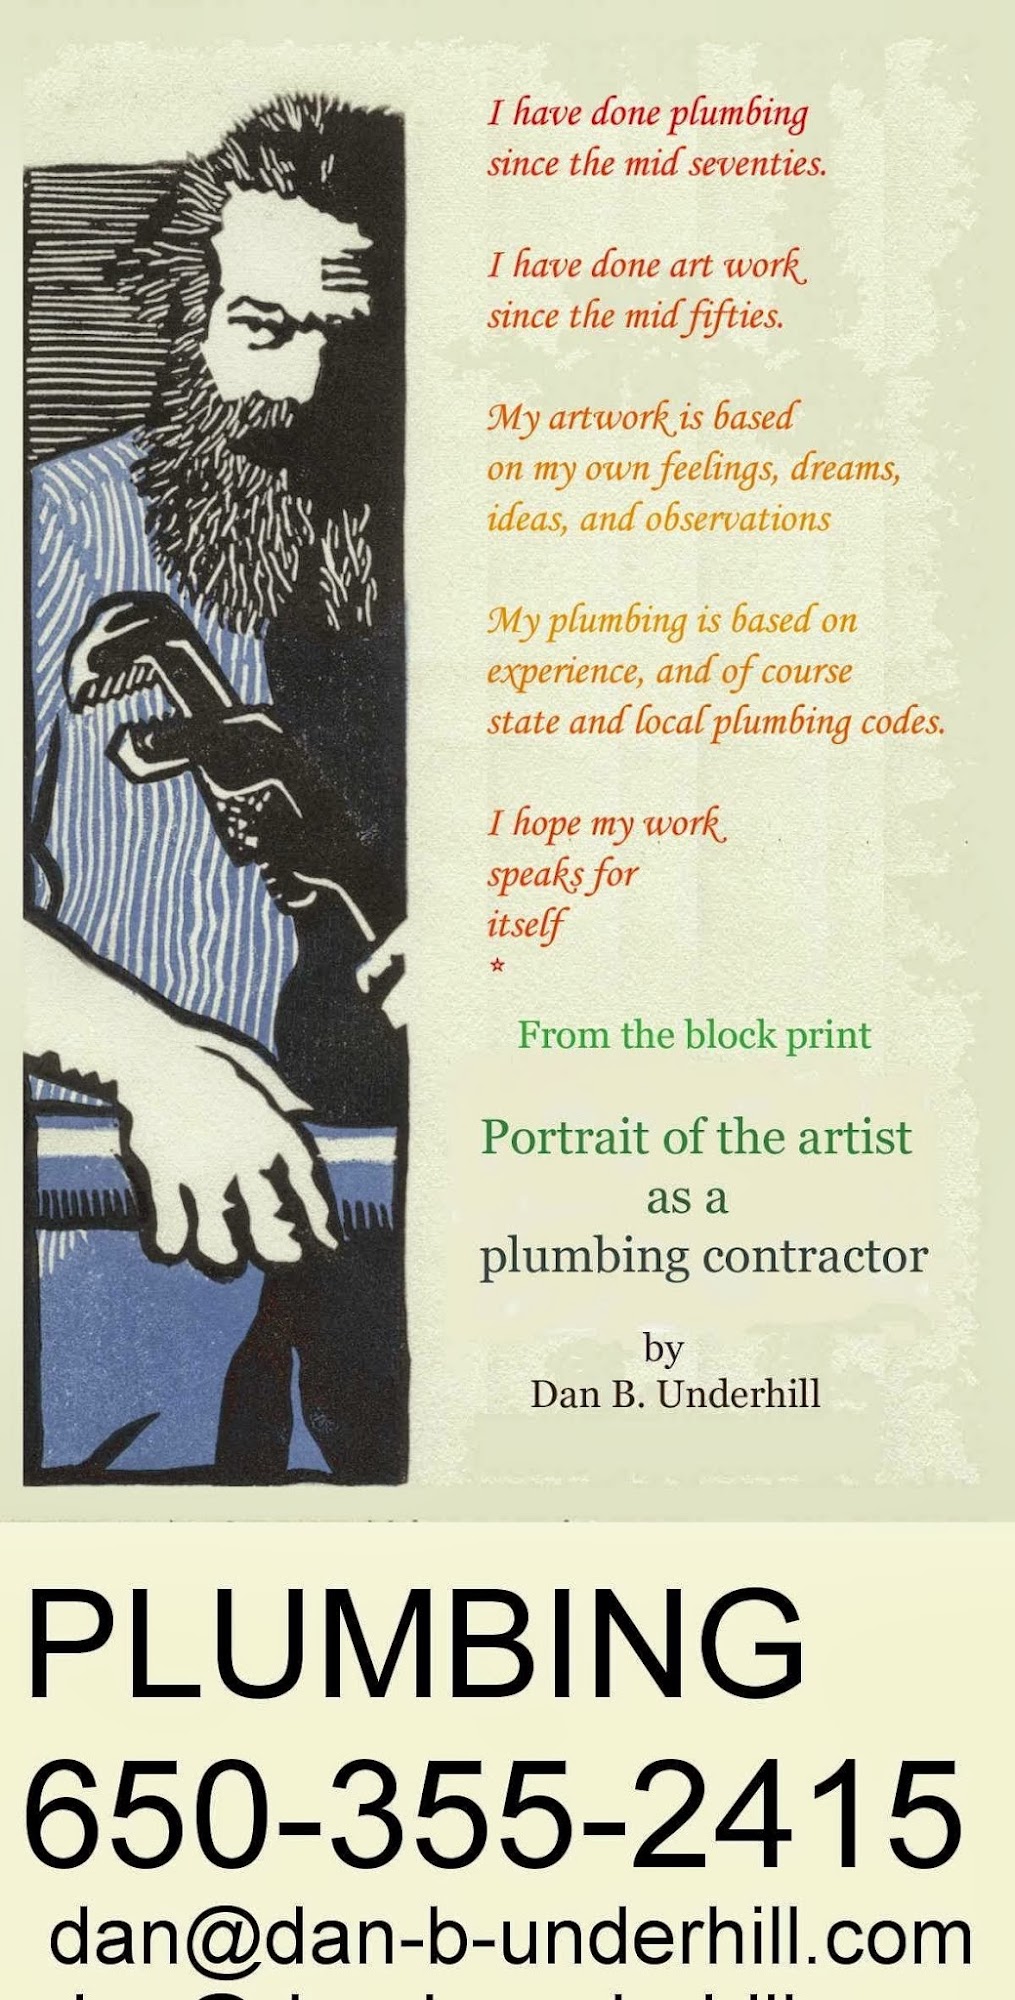 Dan B. Underhill, Plumbing Contractor